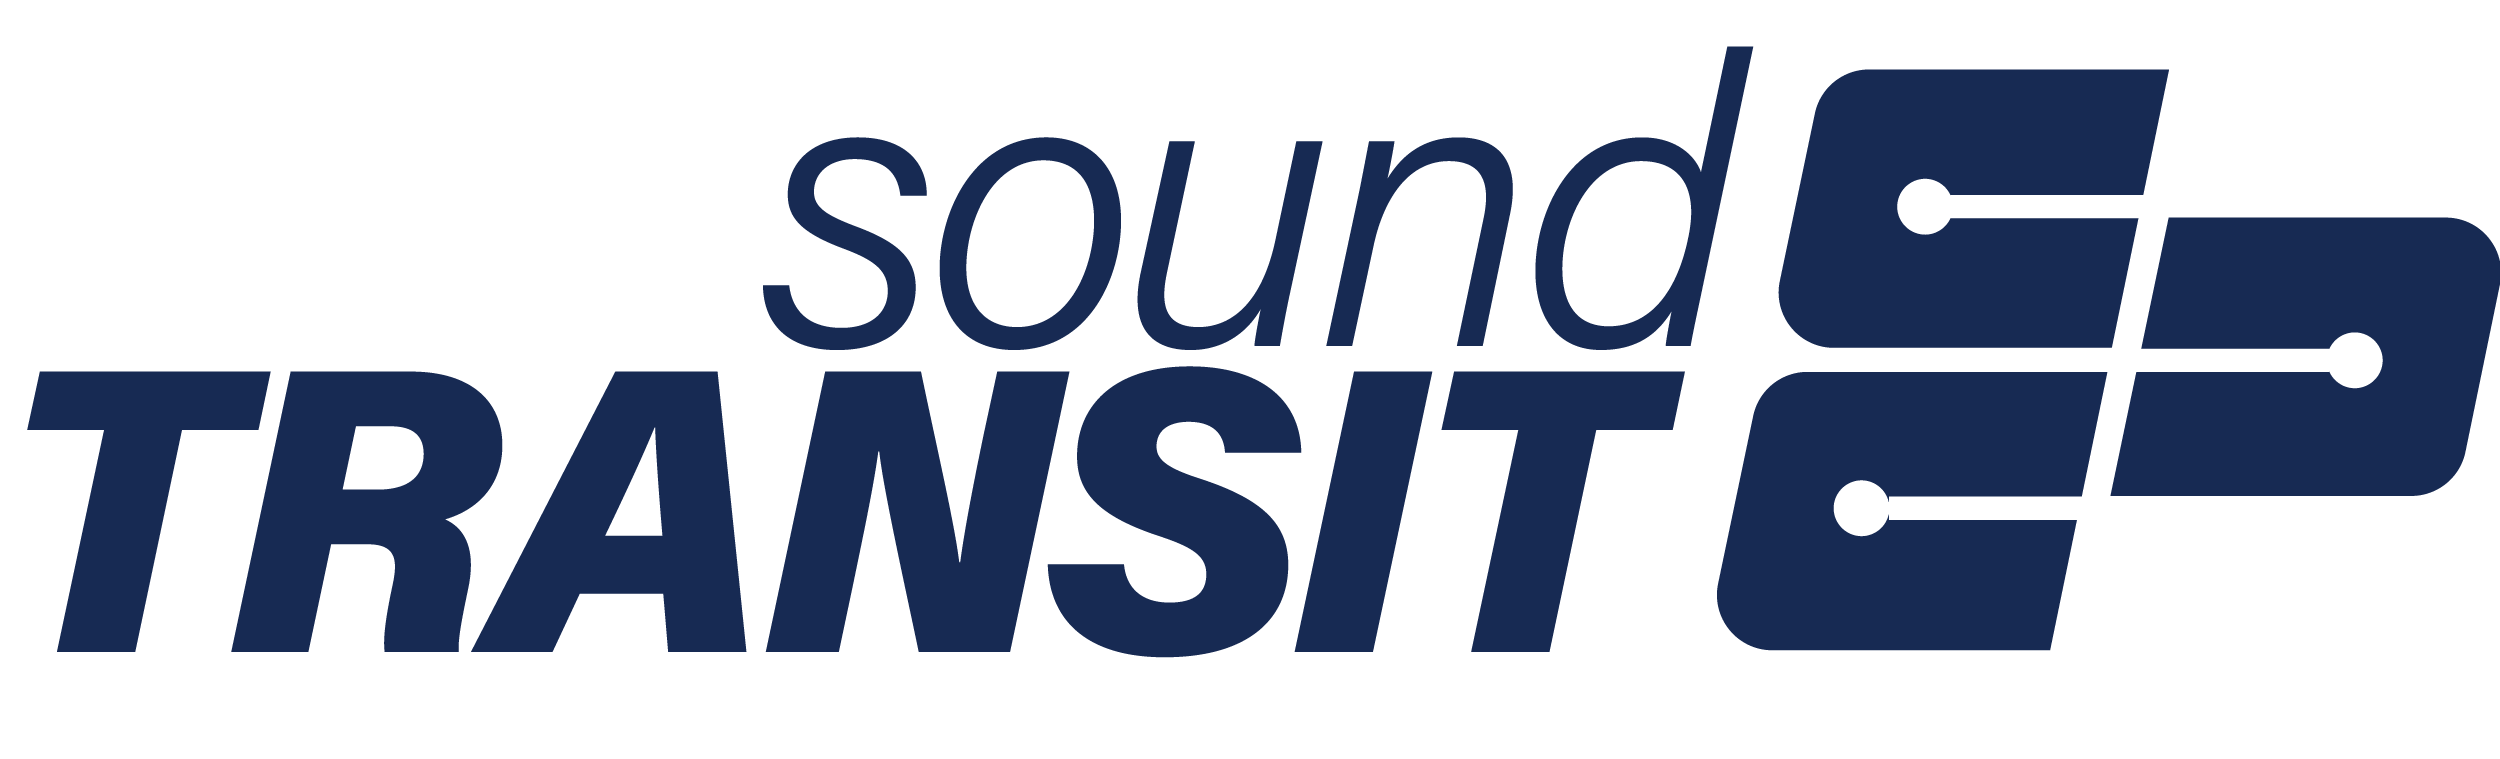 soundtransit-logo